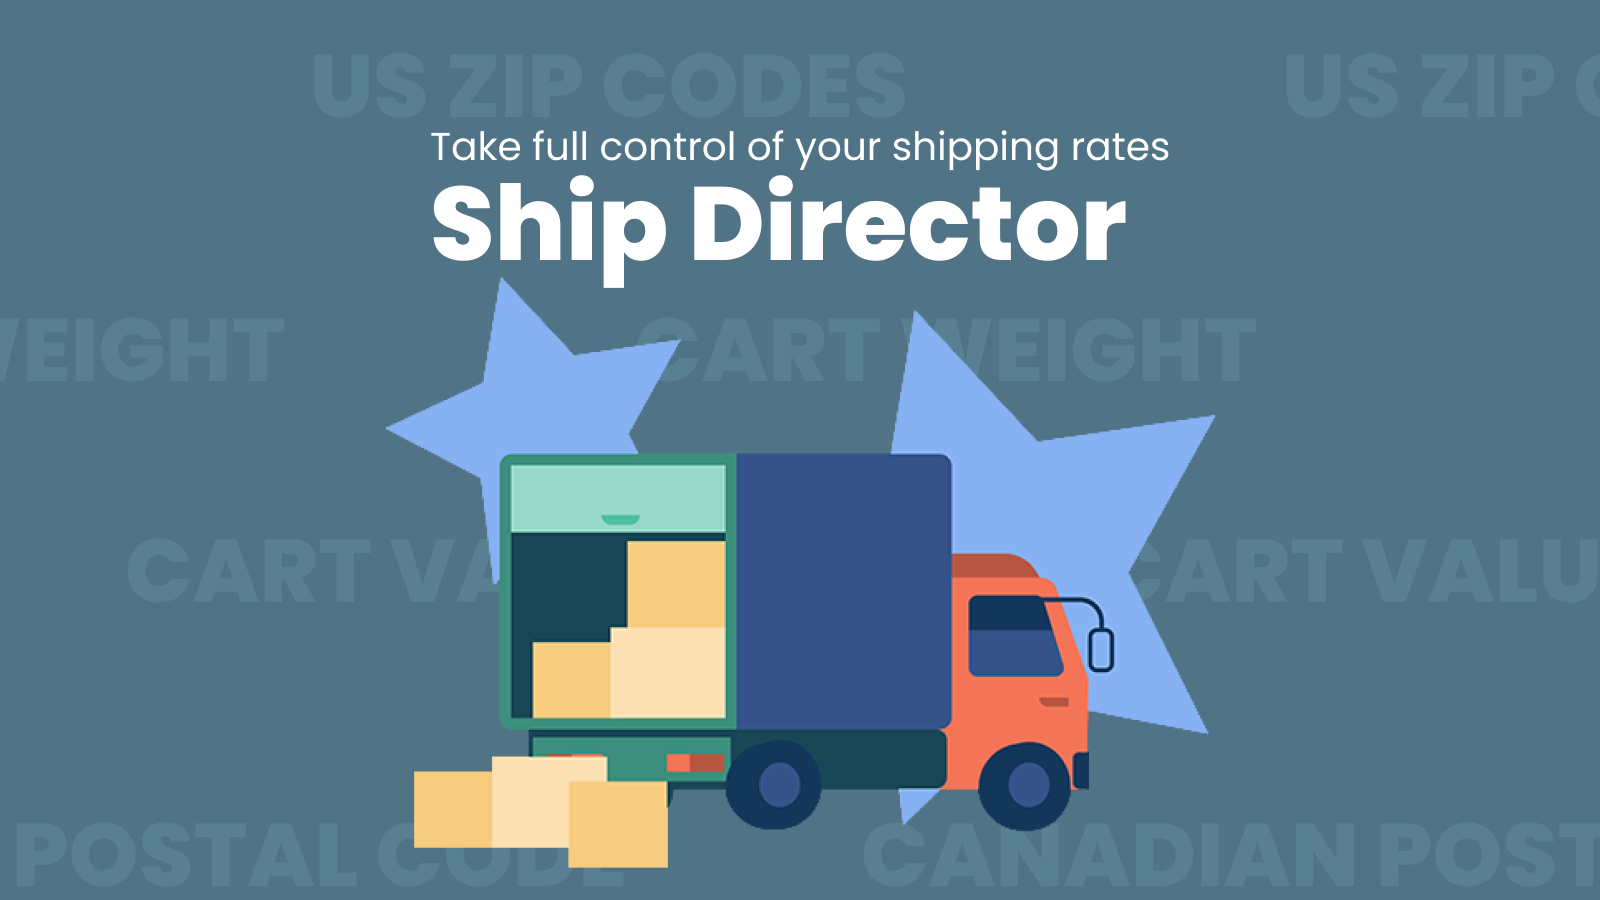 Tag kontrol over dine forsendelsespriser med Ship Director